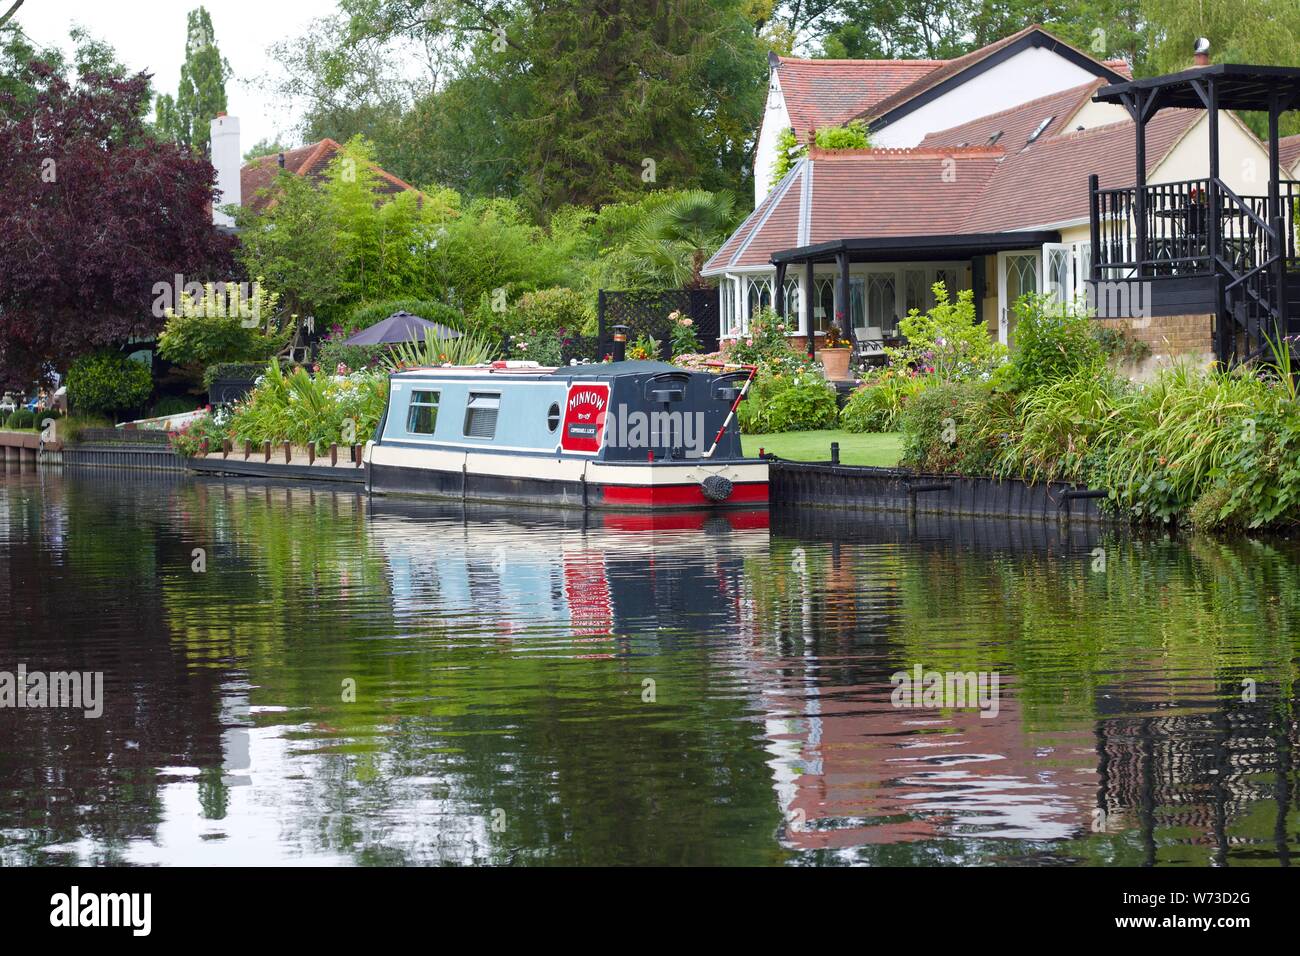 3 agosto 2019 - Harefield, Inghilterra: Canal con casa e barca riflessa nell'acqua Foto Stock